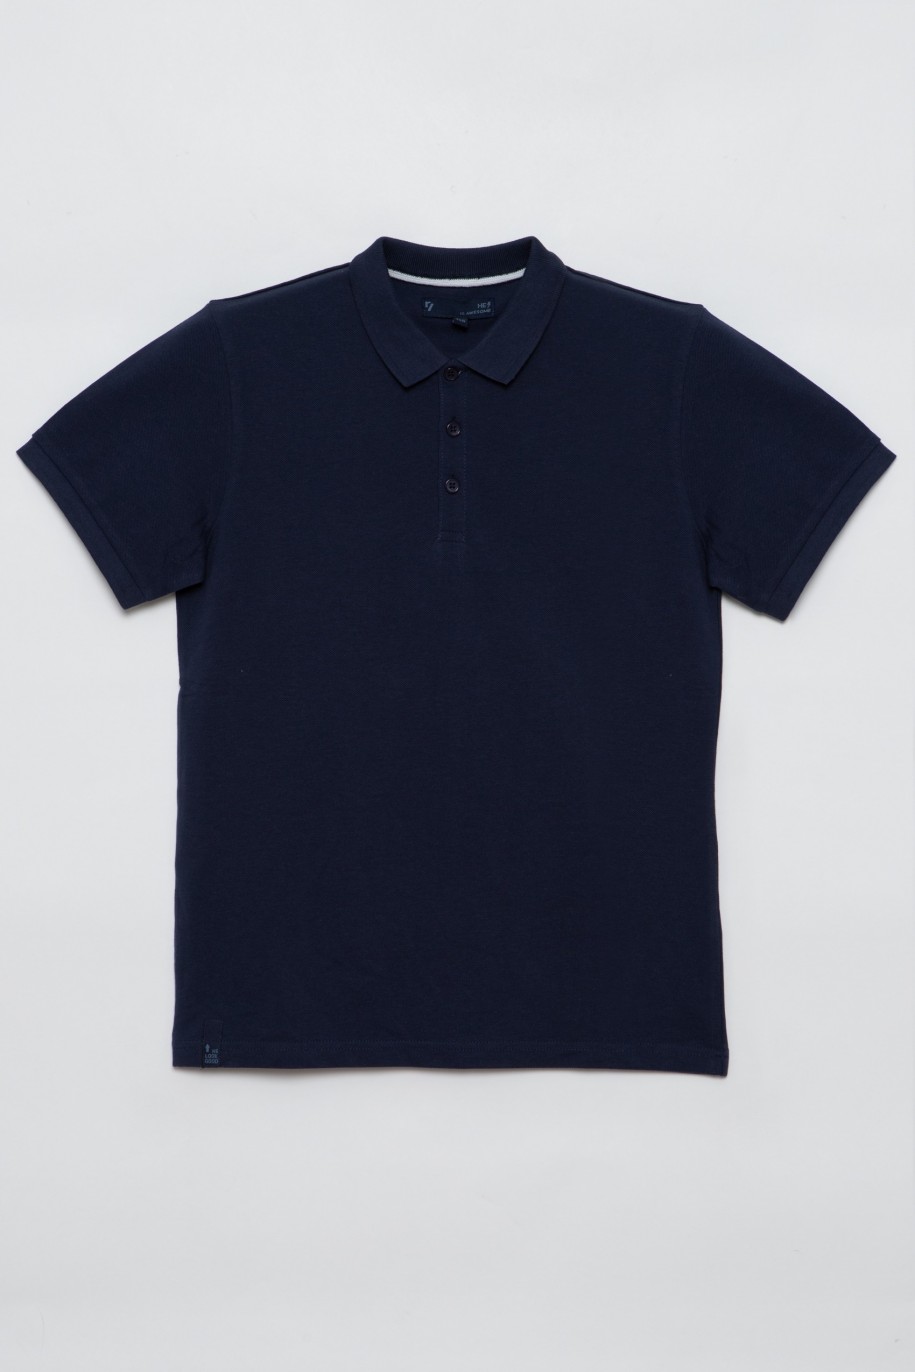 Granatowy t-shirt polo dla chłopaka - 28405